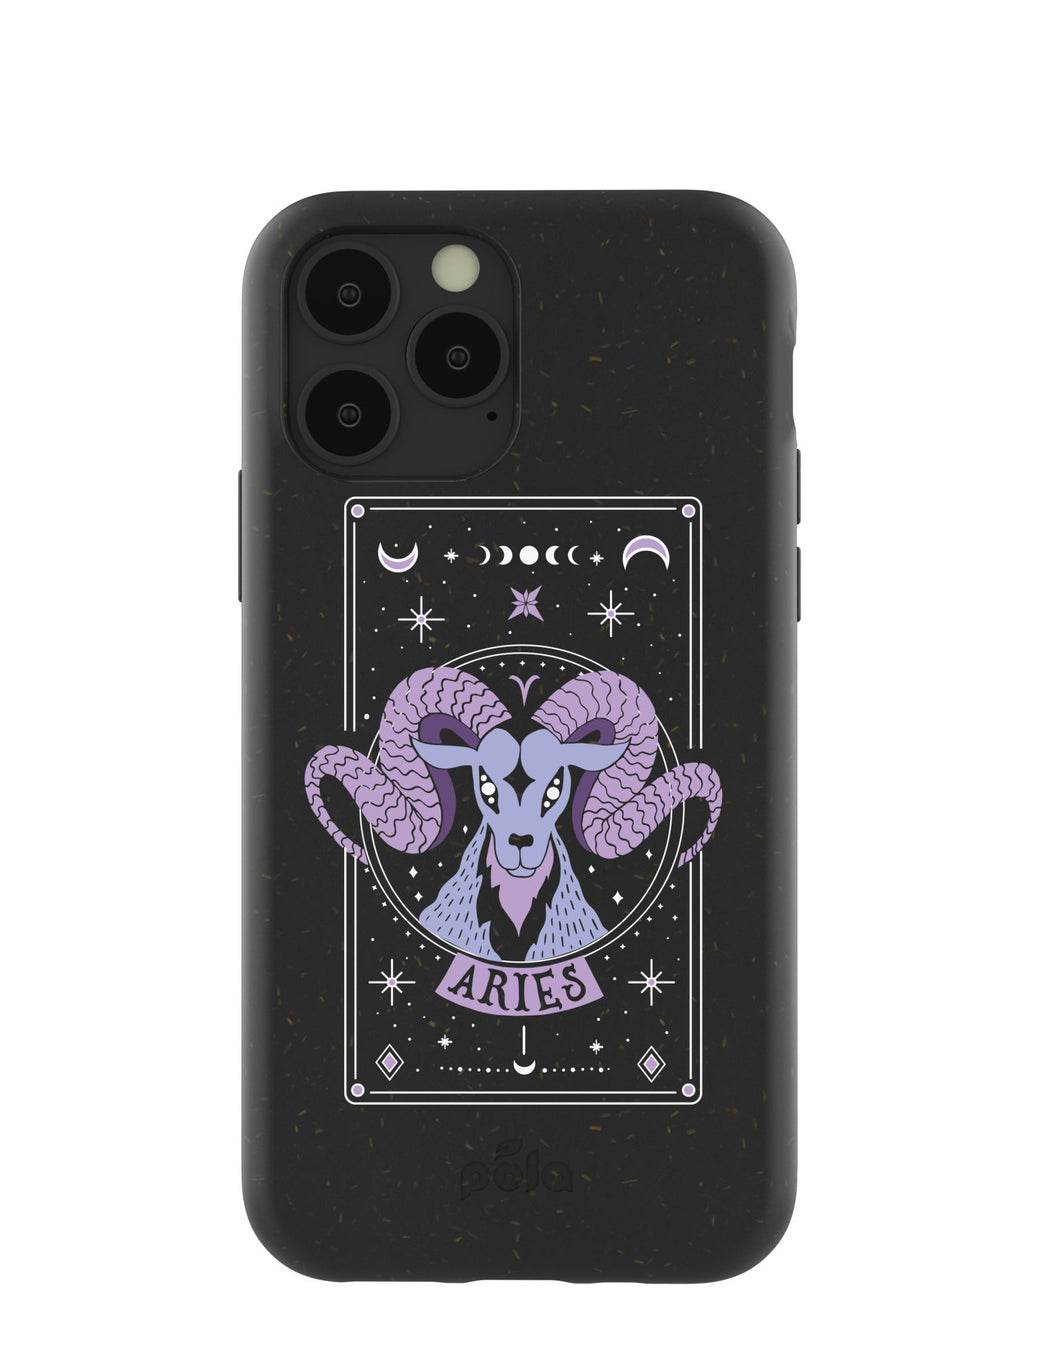 Black Aries iPhone 11 Pro Case